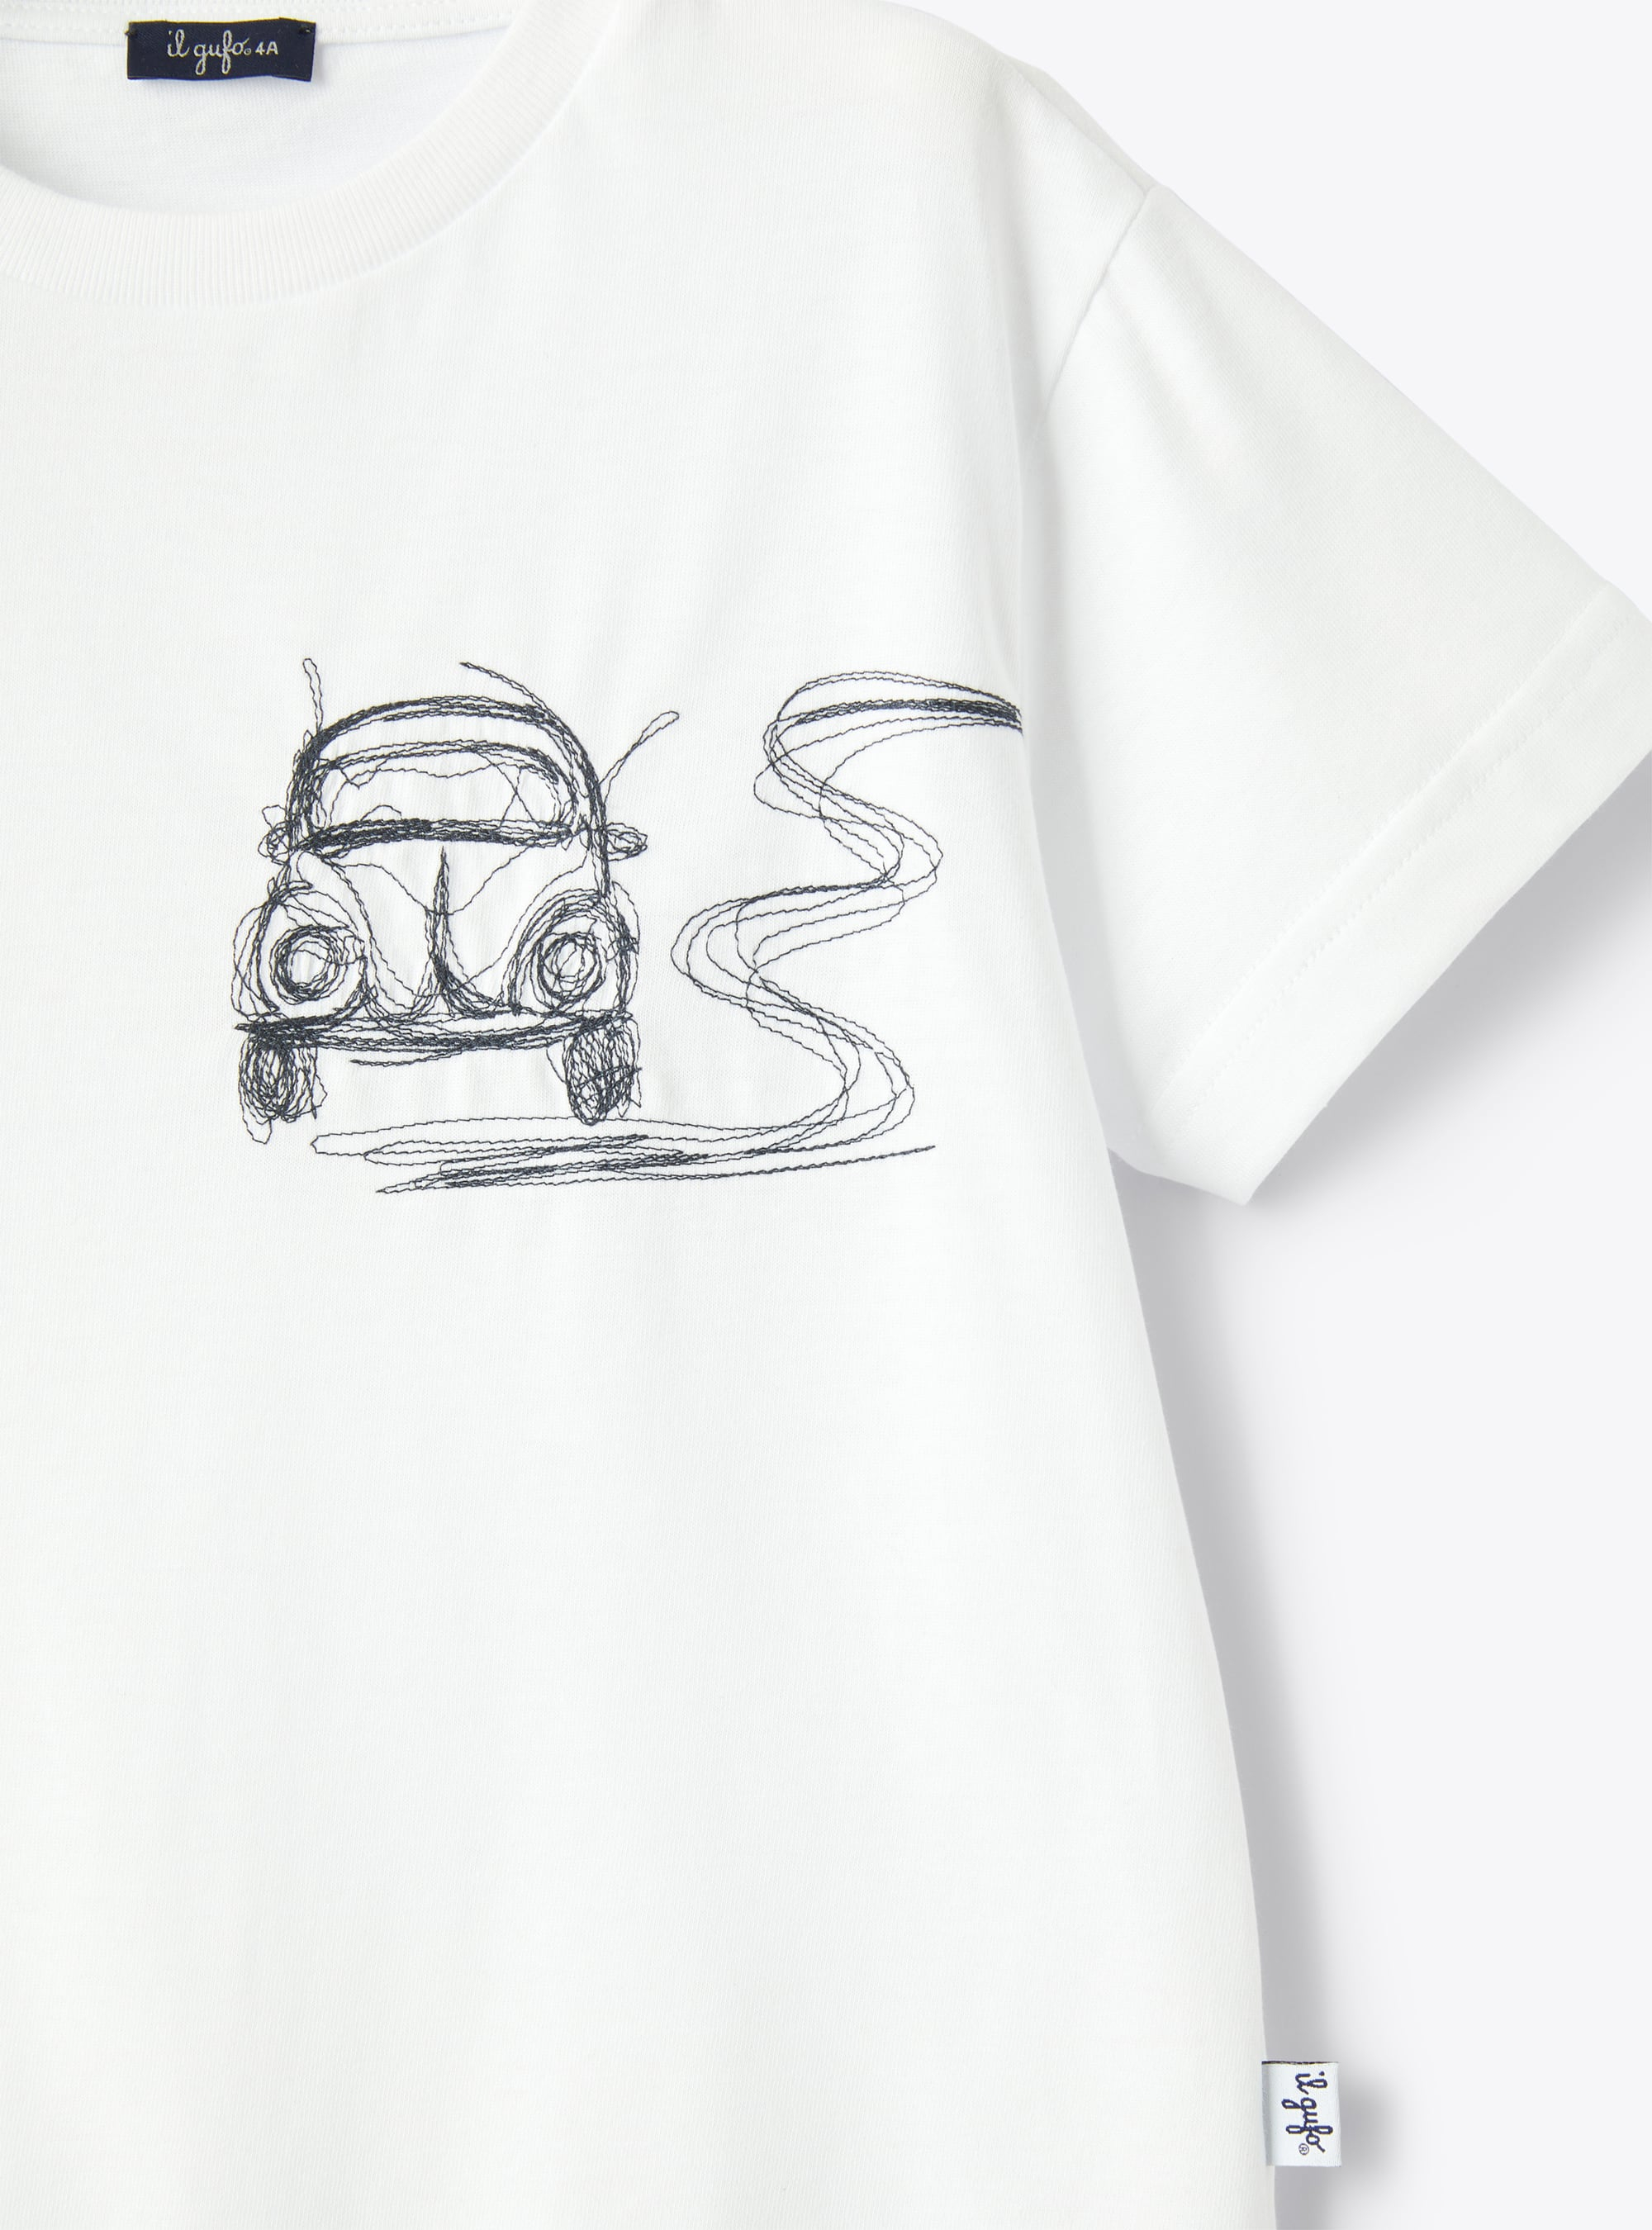 Белая футболка с вышивкой «Автомобиль» синего цвета - СИНИЙ | Il Gufo